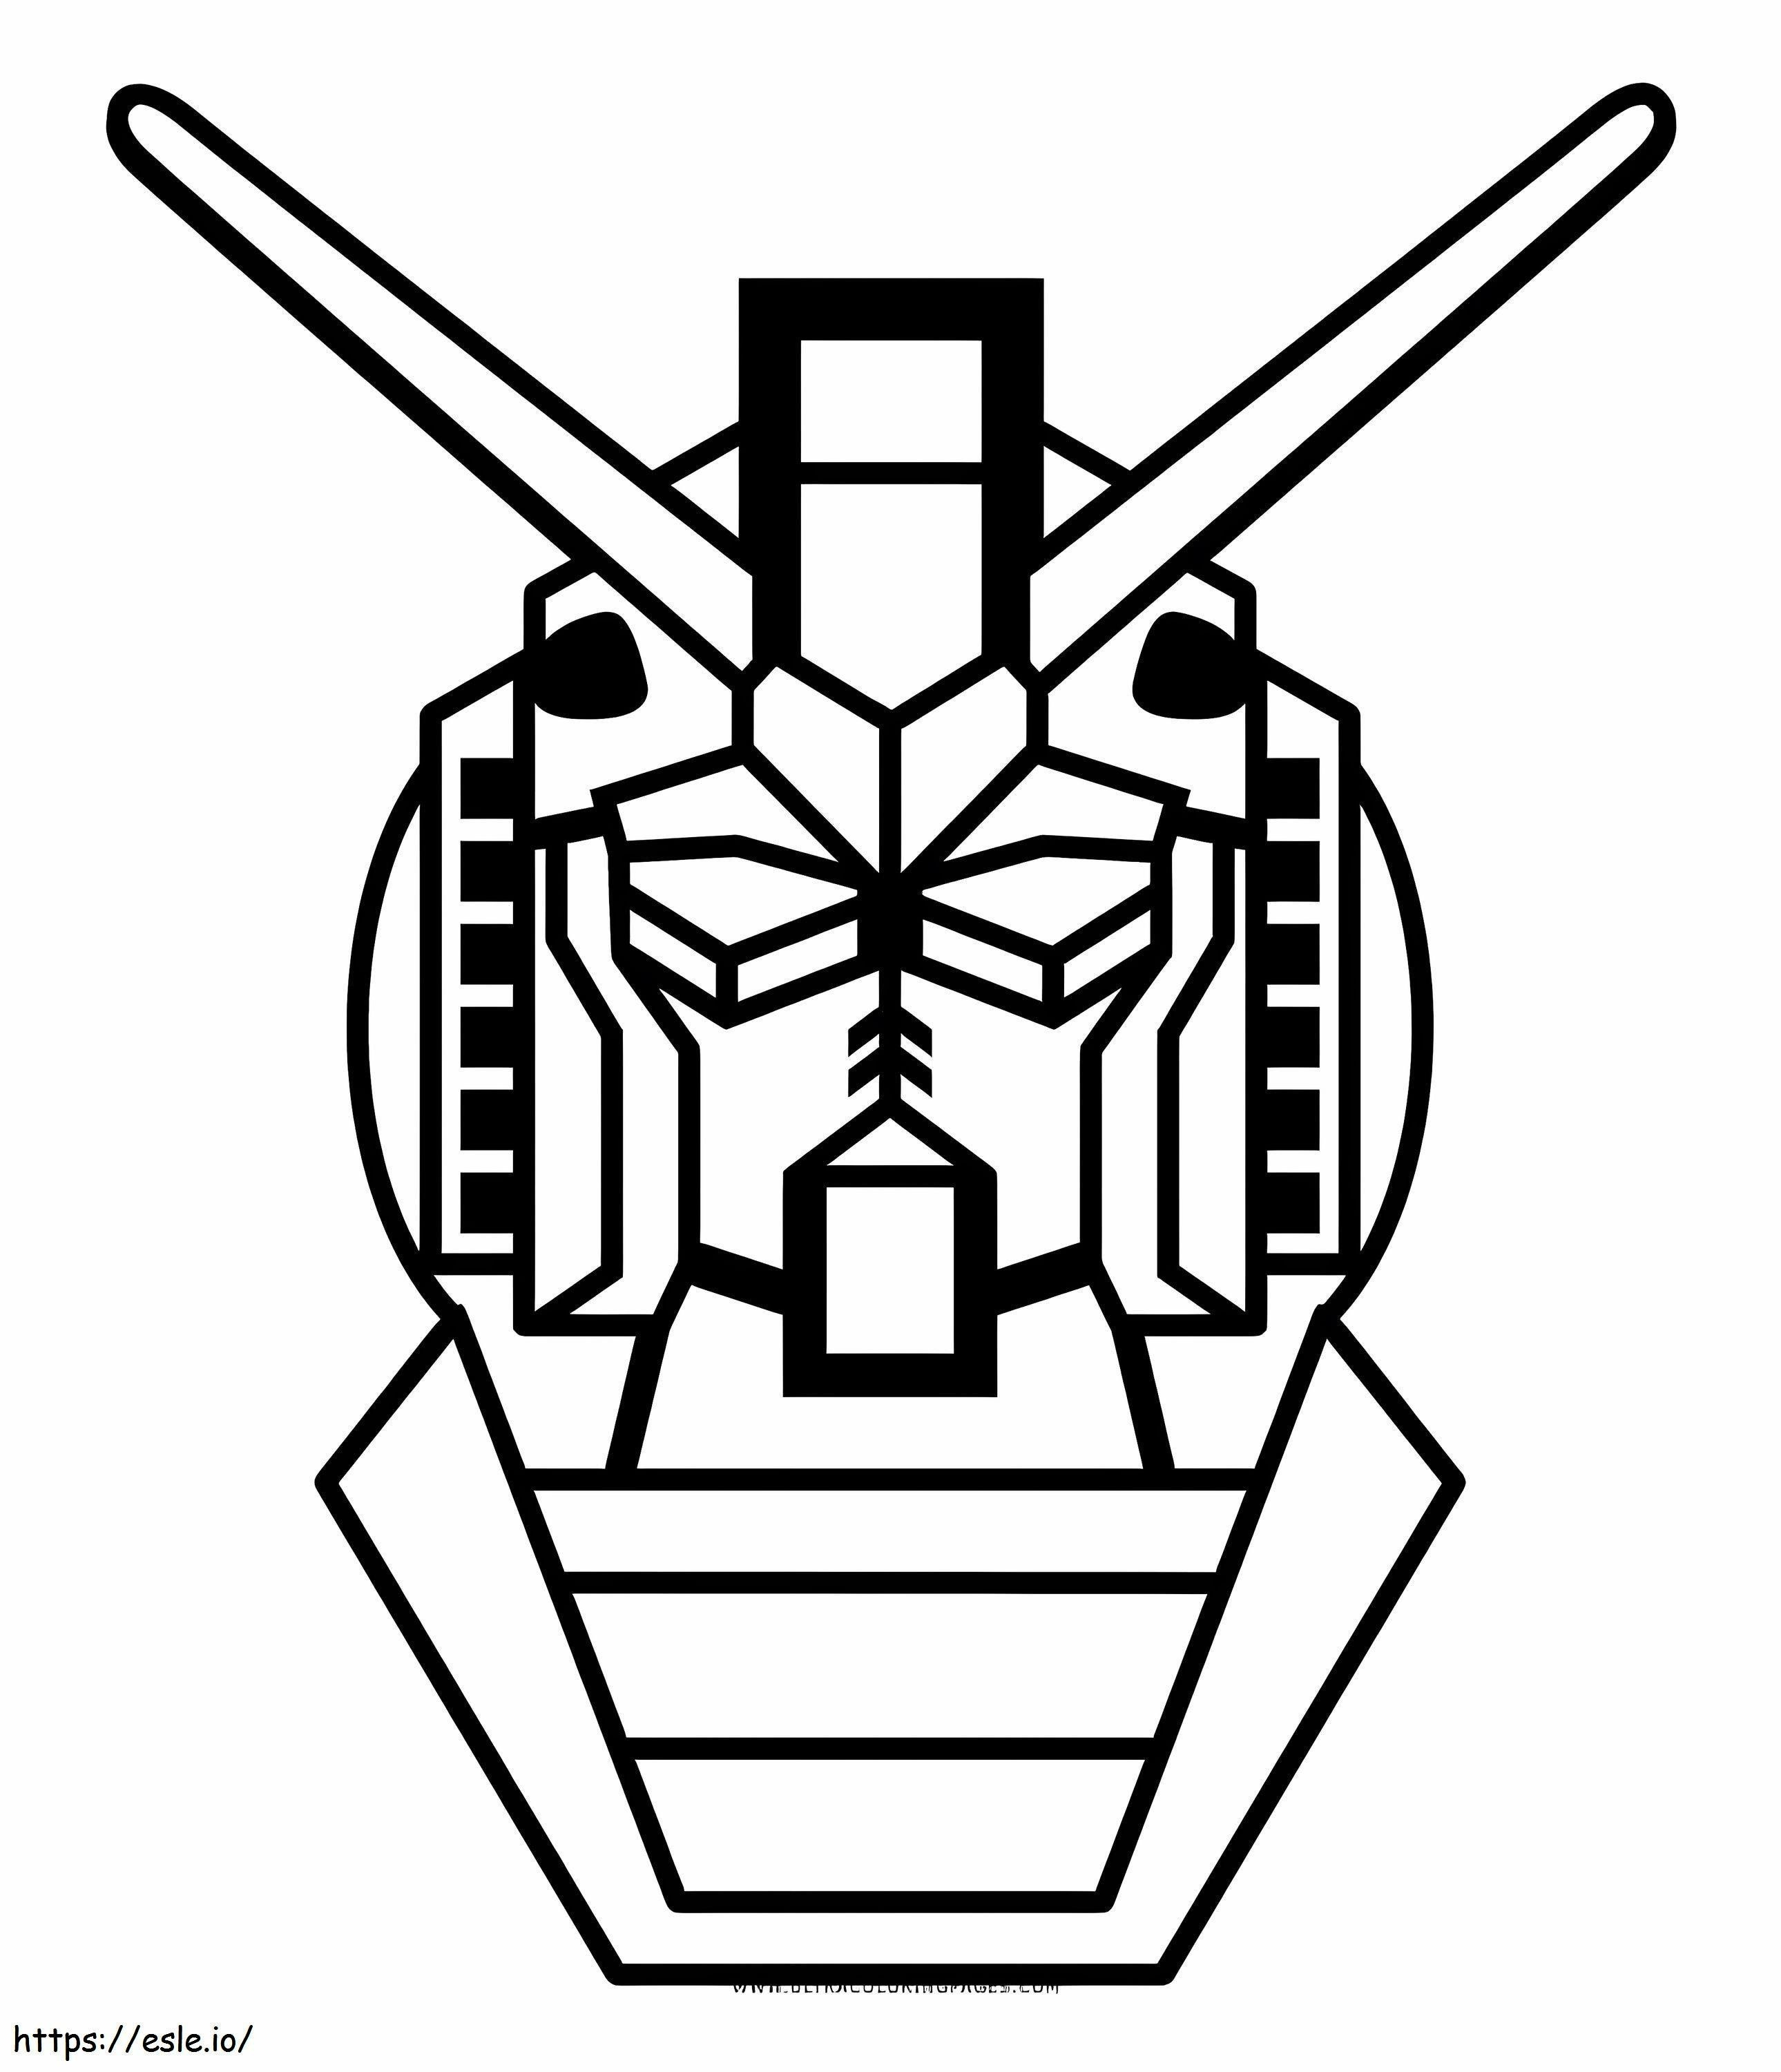 Gundam-Kopf ausmalbilder